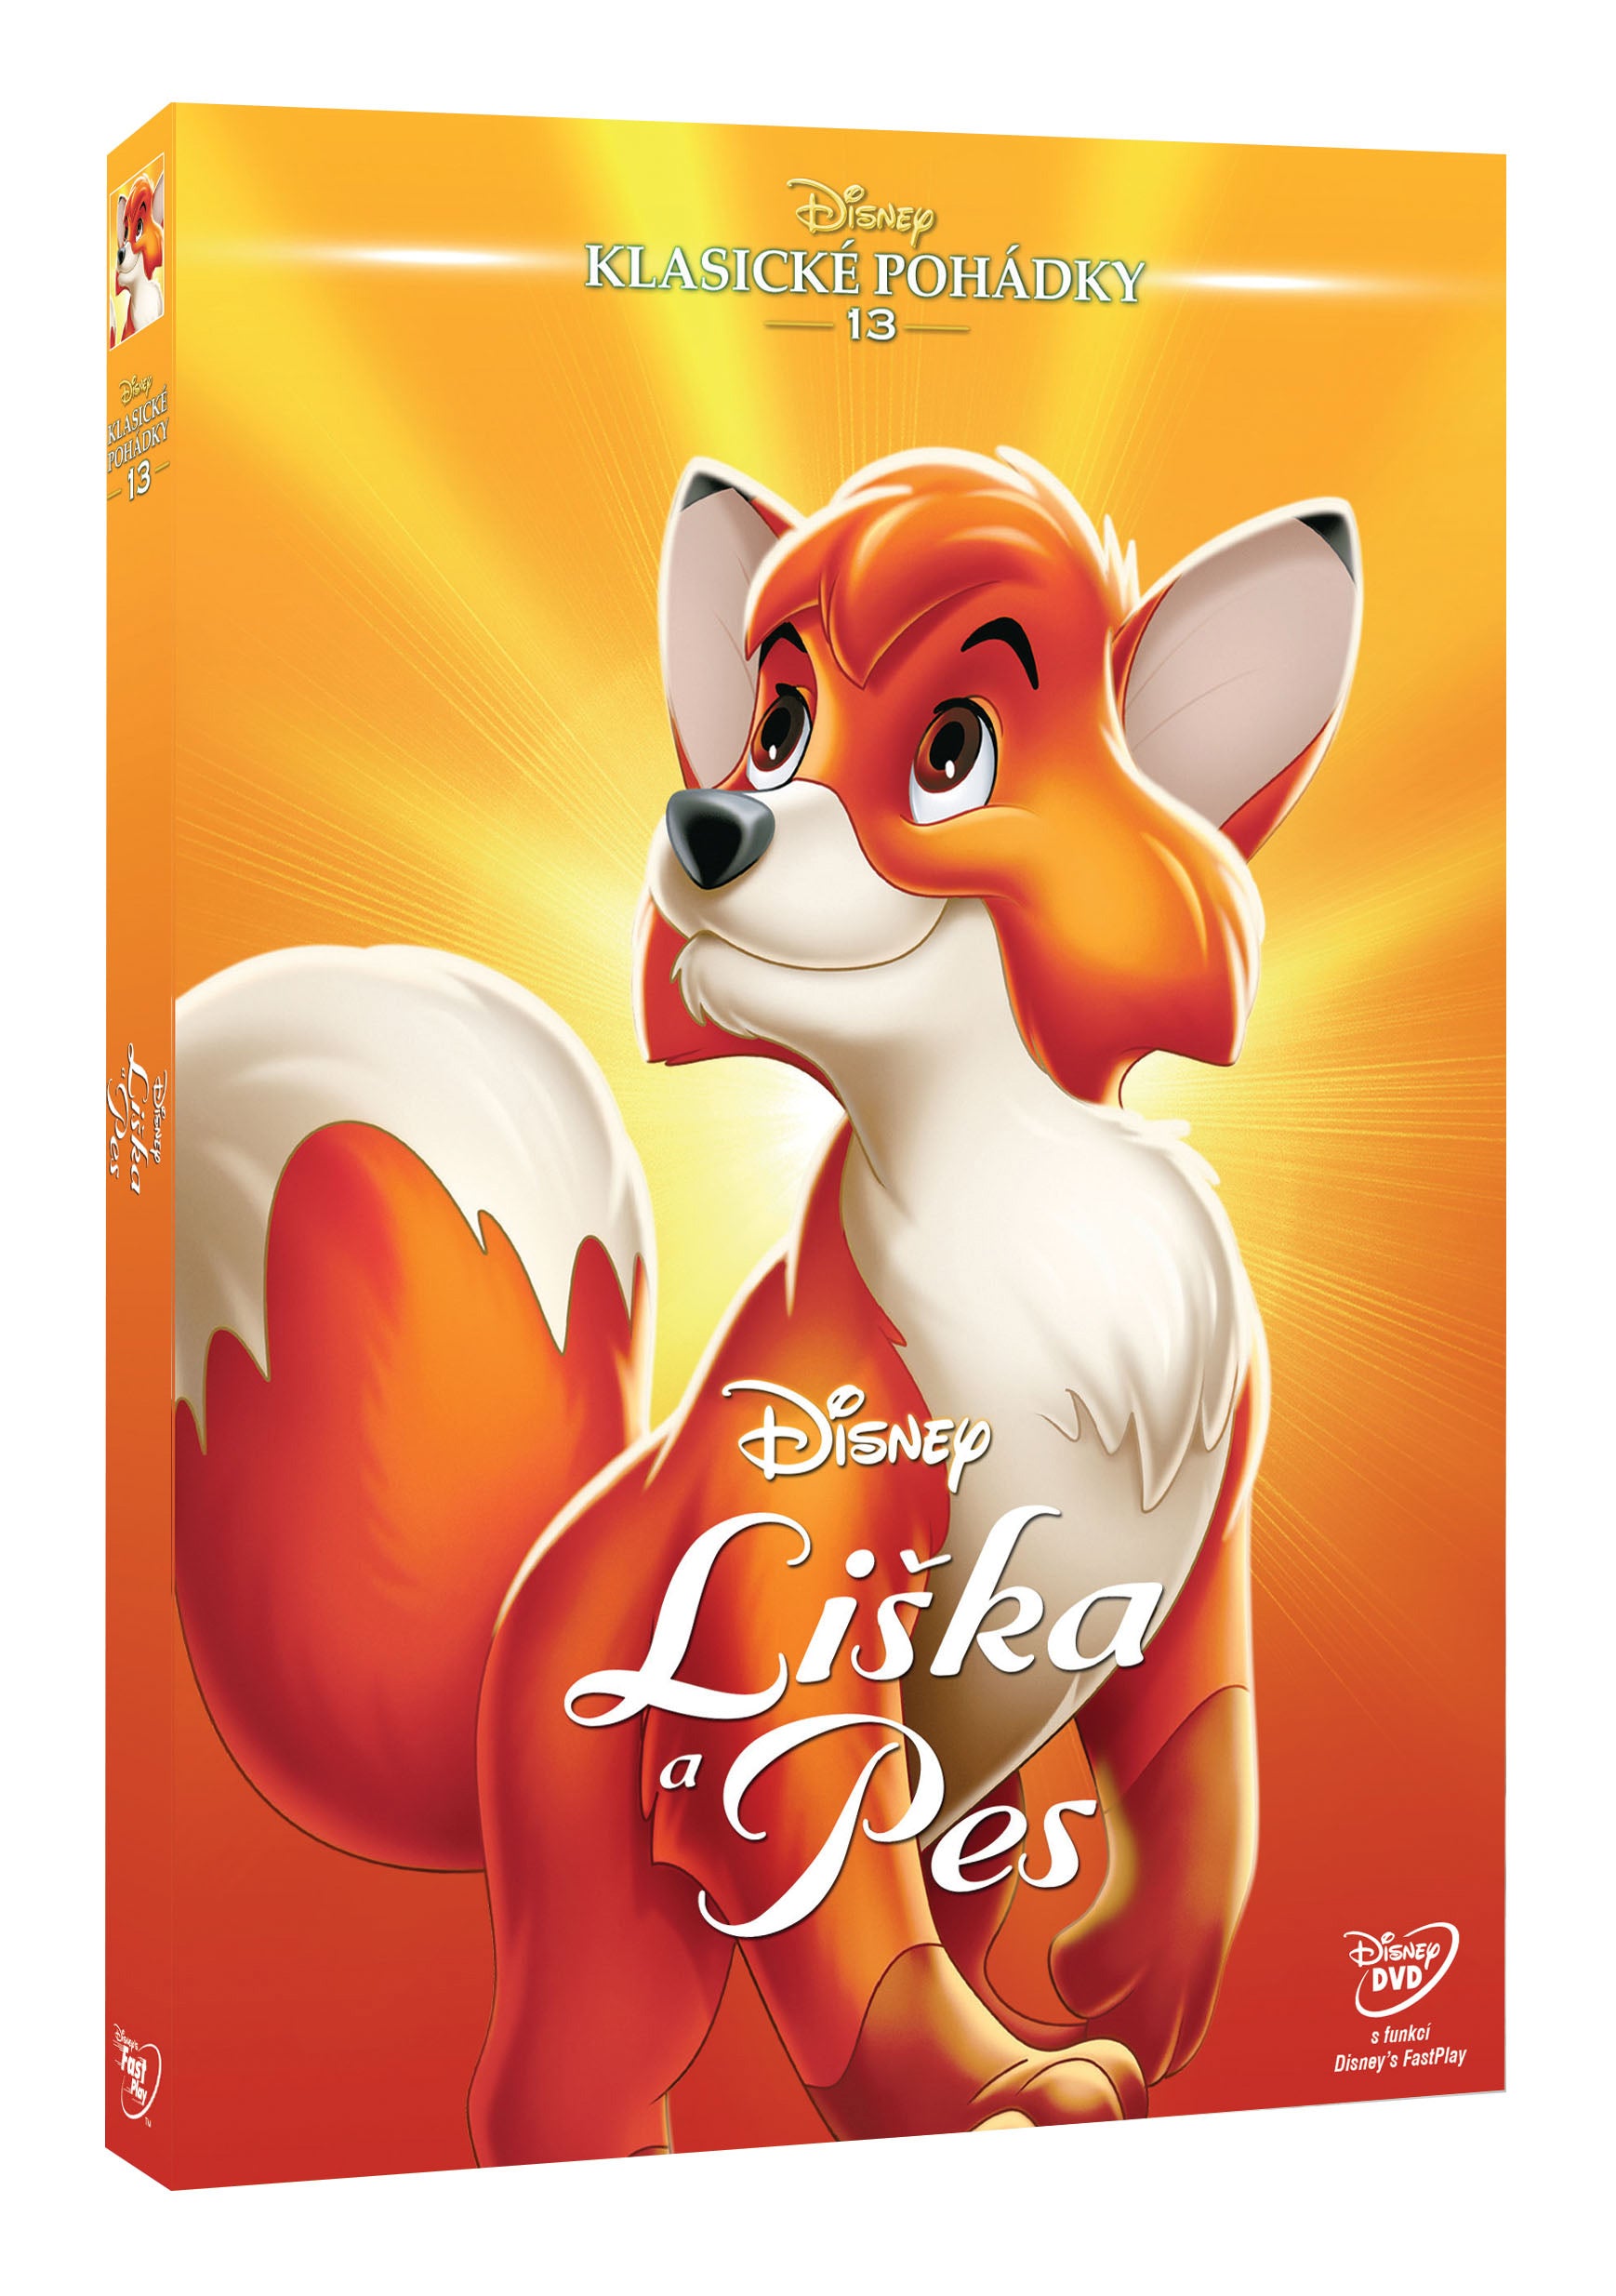 Liska a pes S.E. - Edice Disney klasicke pohadky 13. (The Fox and the Hound )